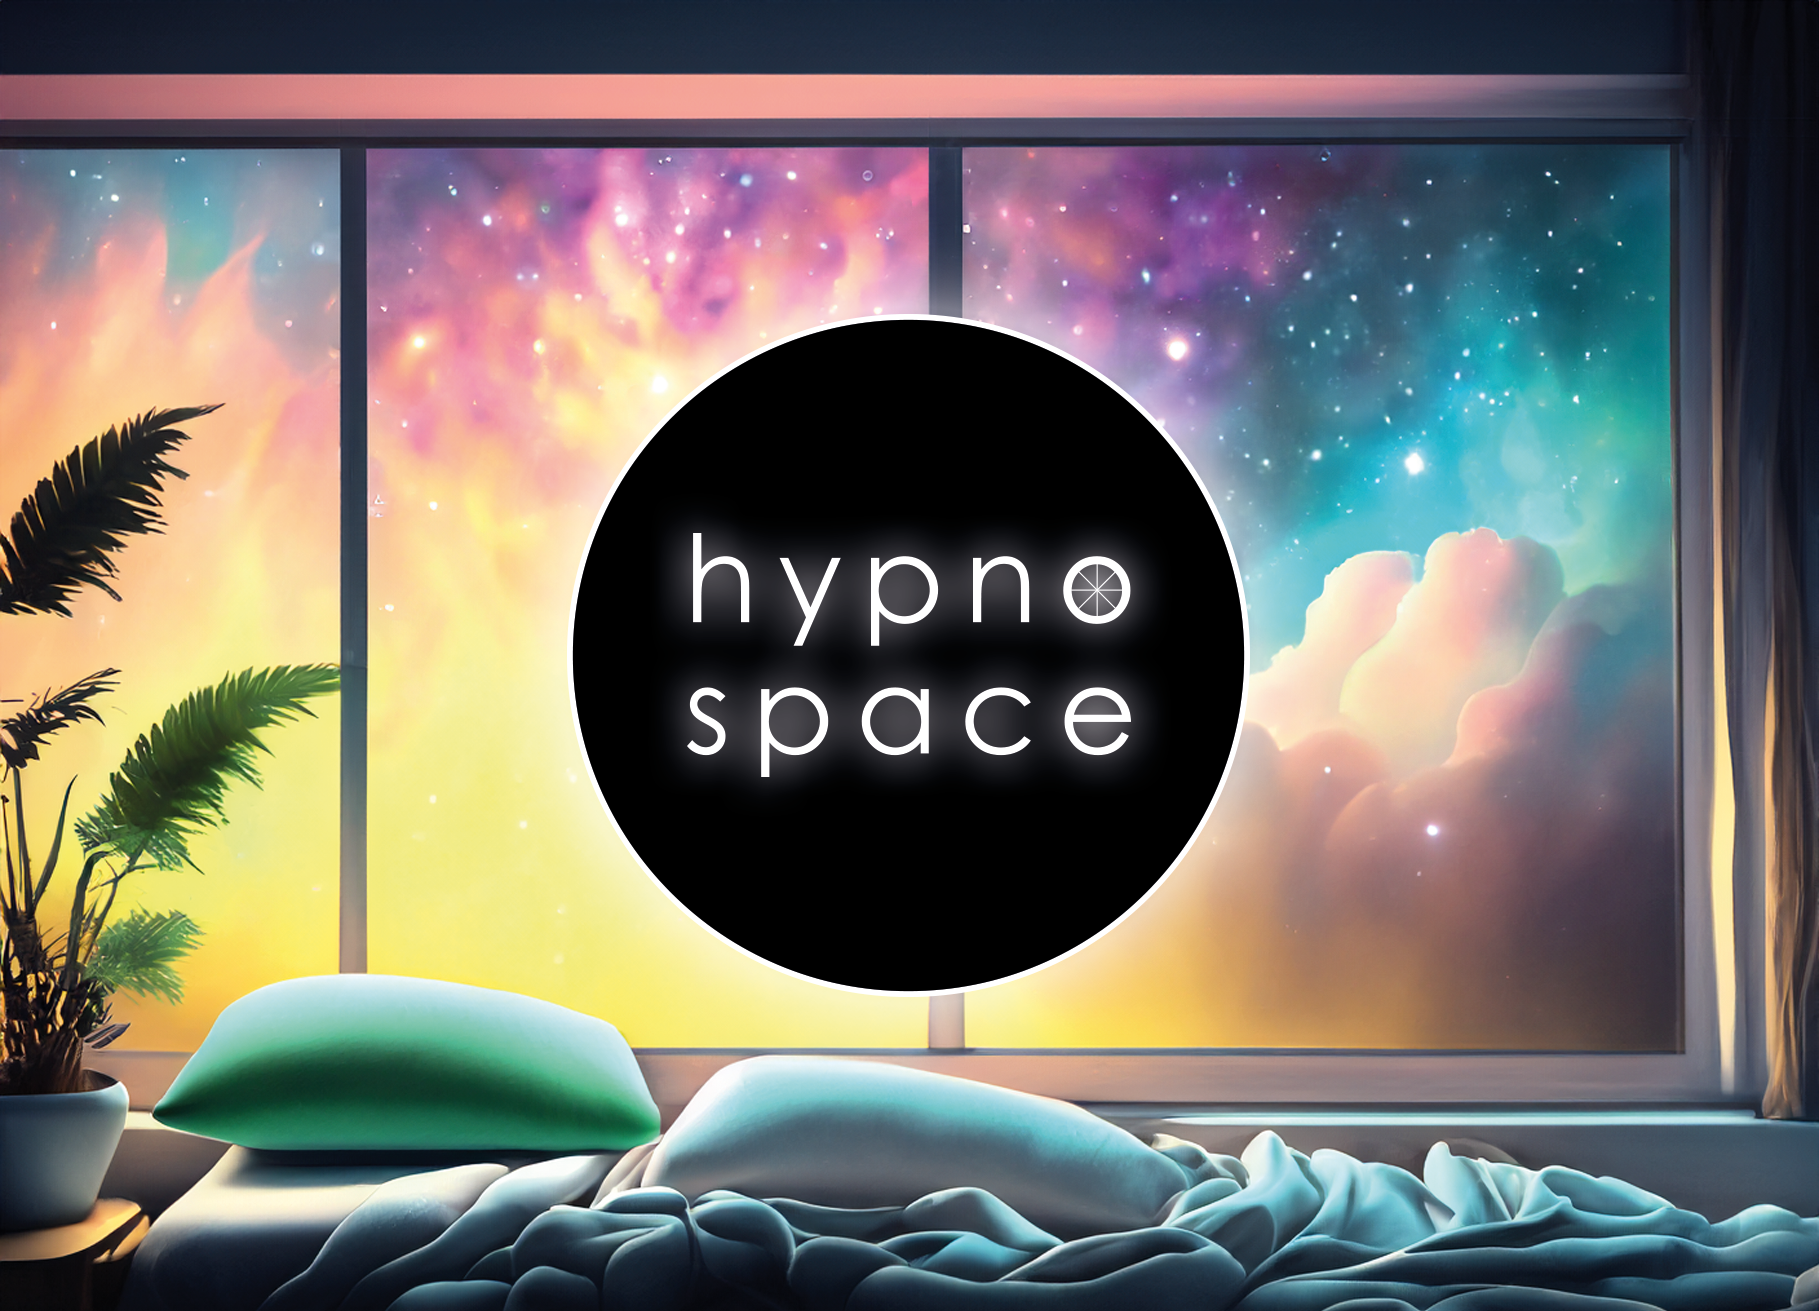 Herz-Hypnose: Manifestiere deine Wünsche mit der Kraft der Liebe - hypnospace - Hypnose in Augsburg